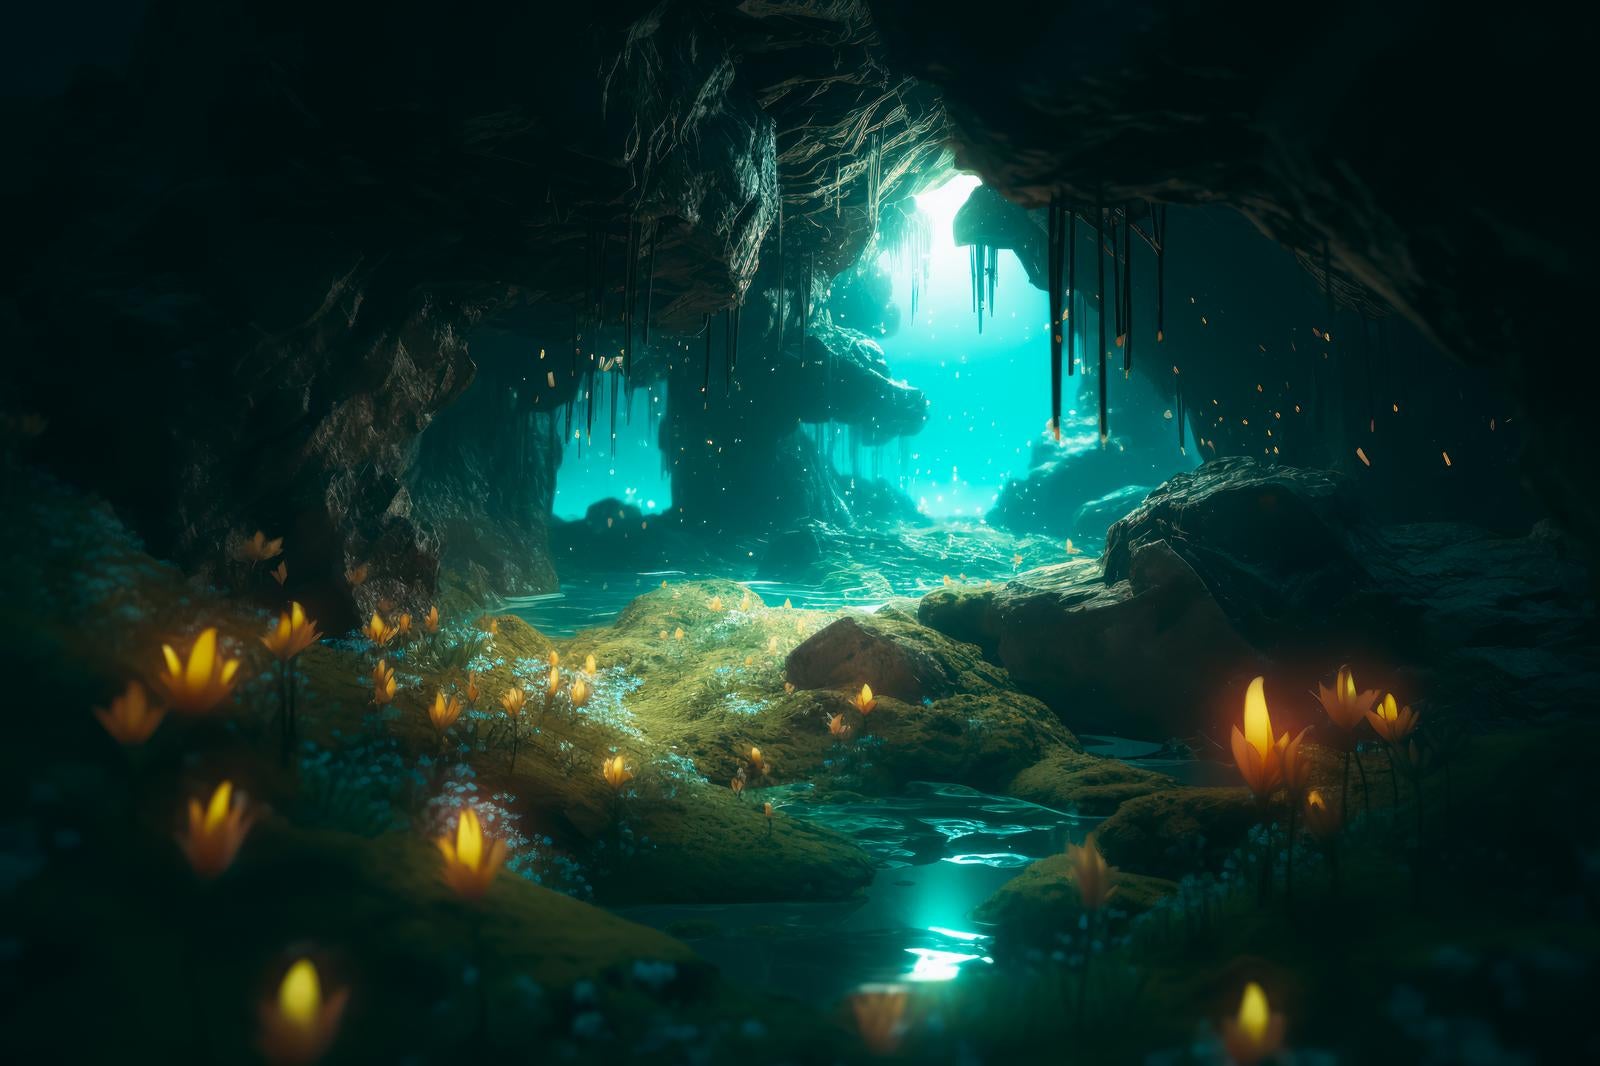 「洞窟の青白い光と清流」の写真